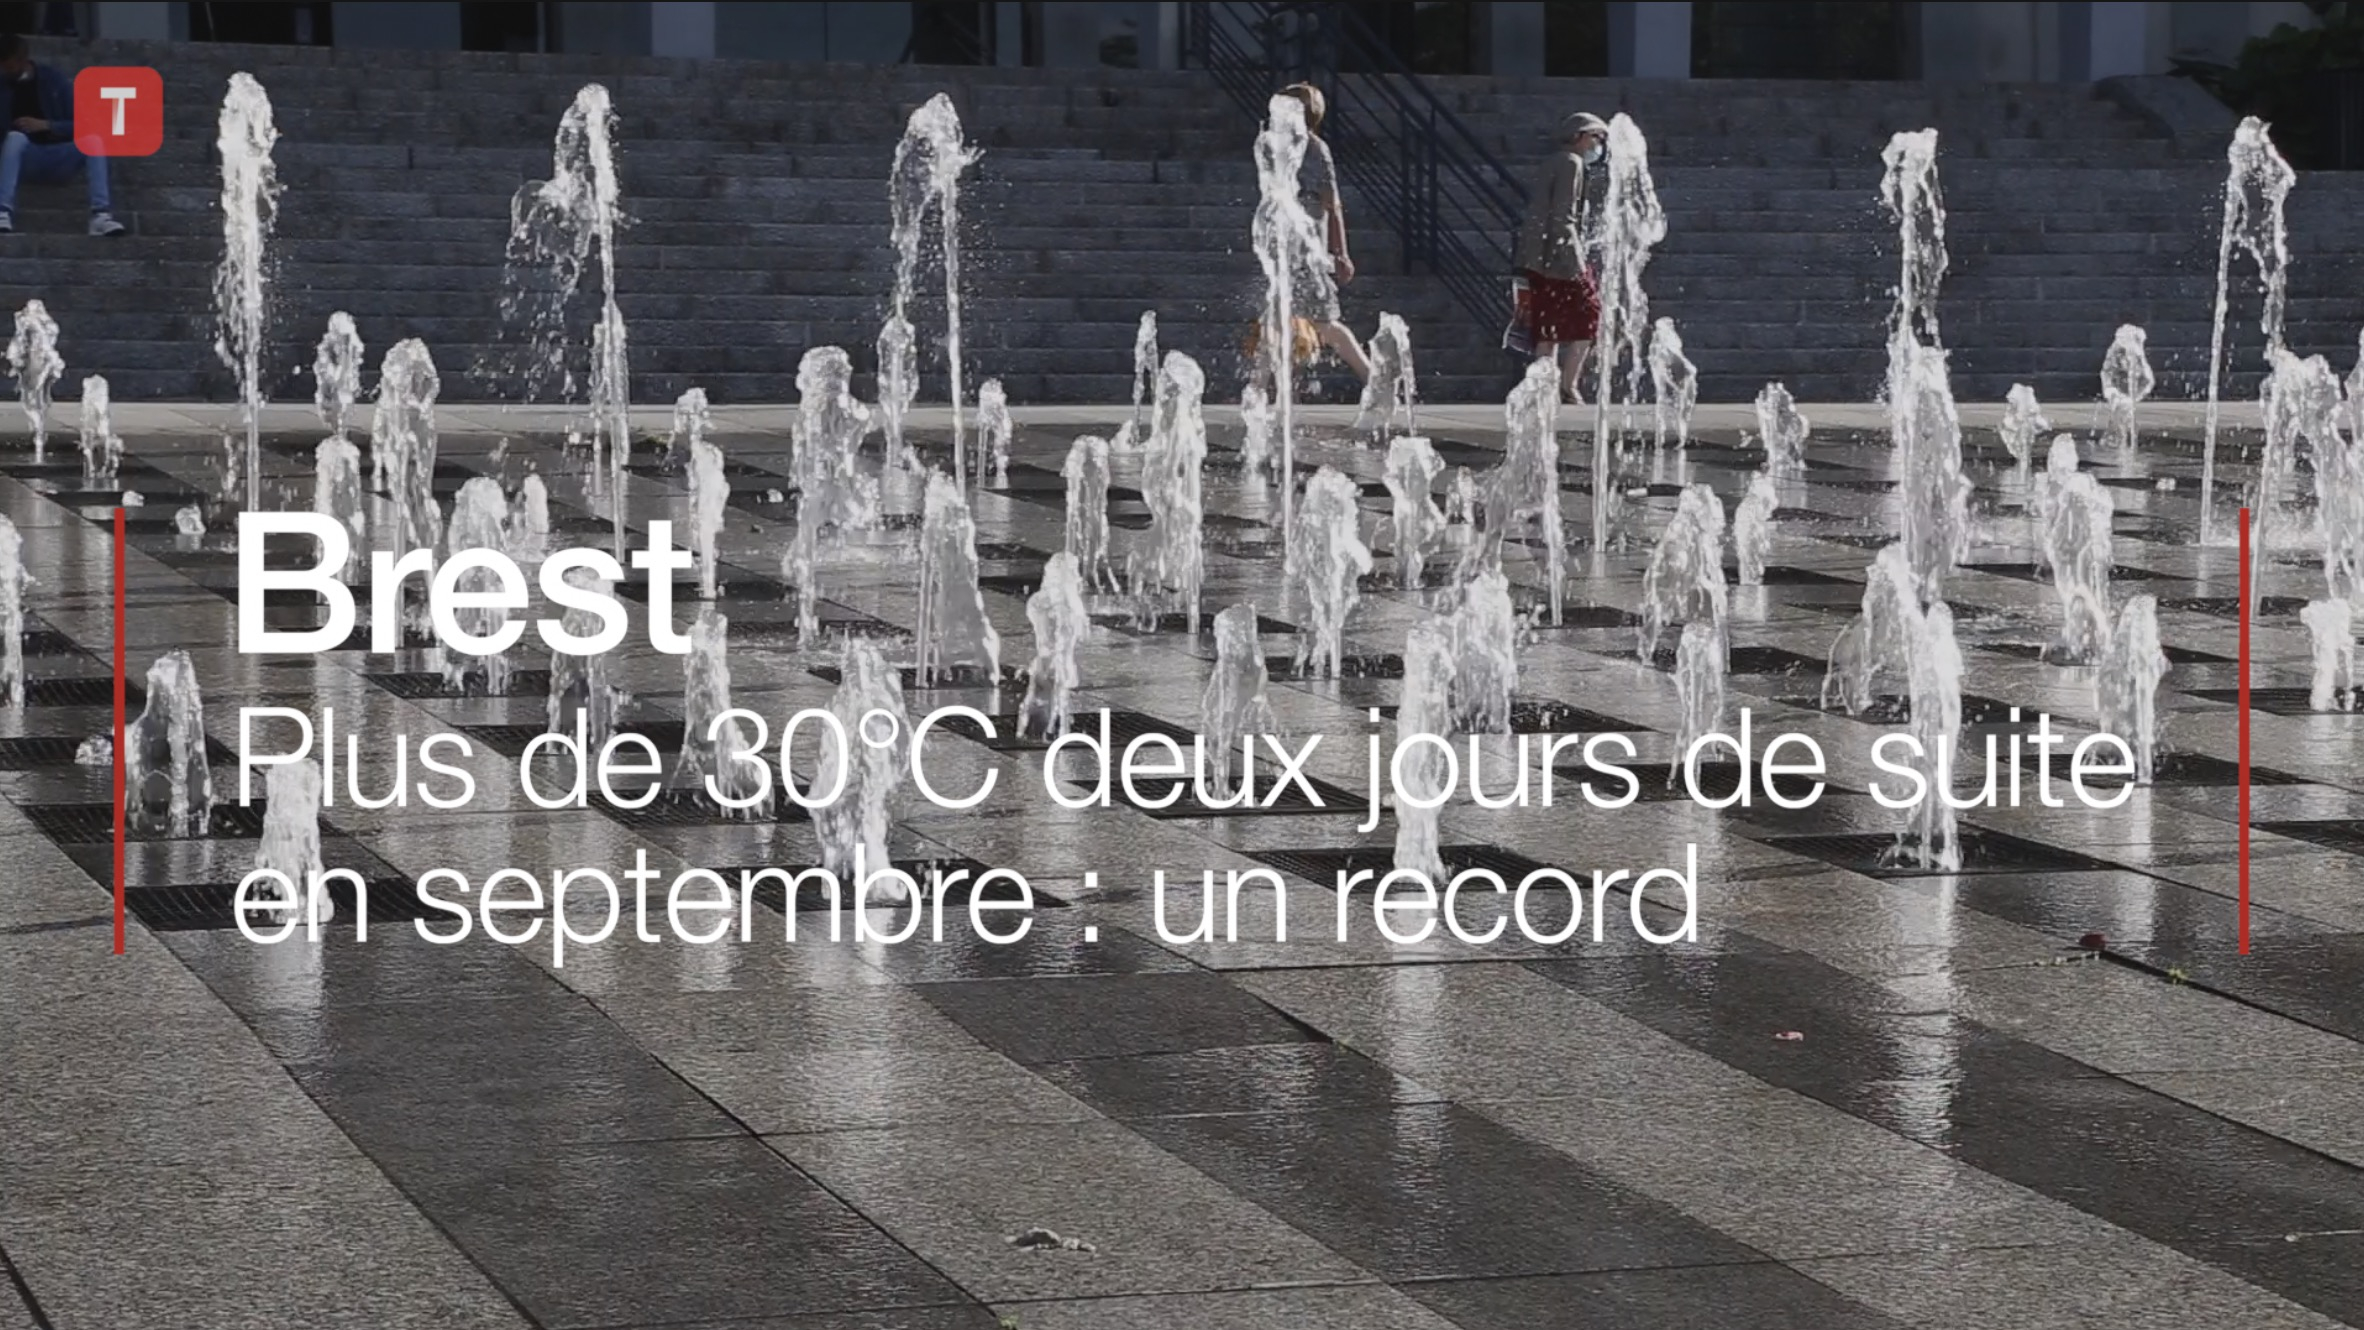 Brest. Plus de 30°C deux jours de suite en septembre : un record (Le Télégramme)